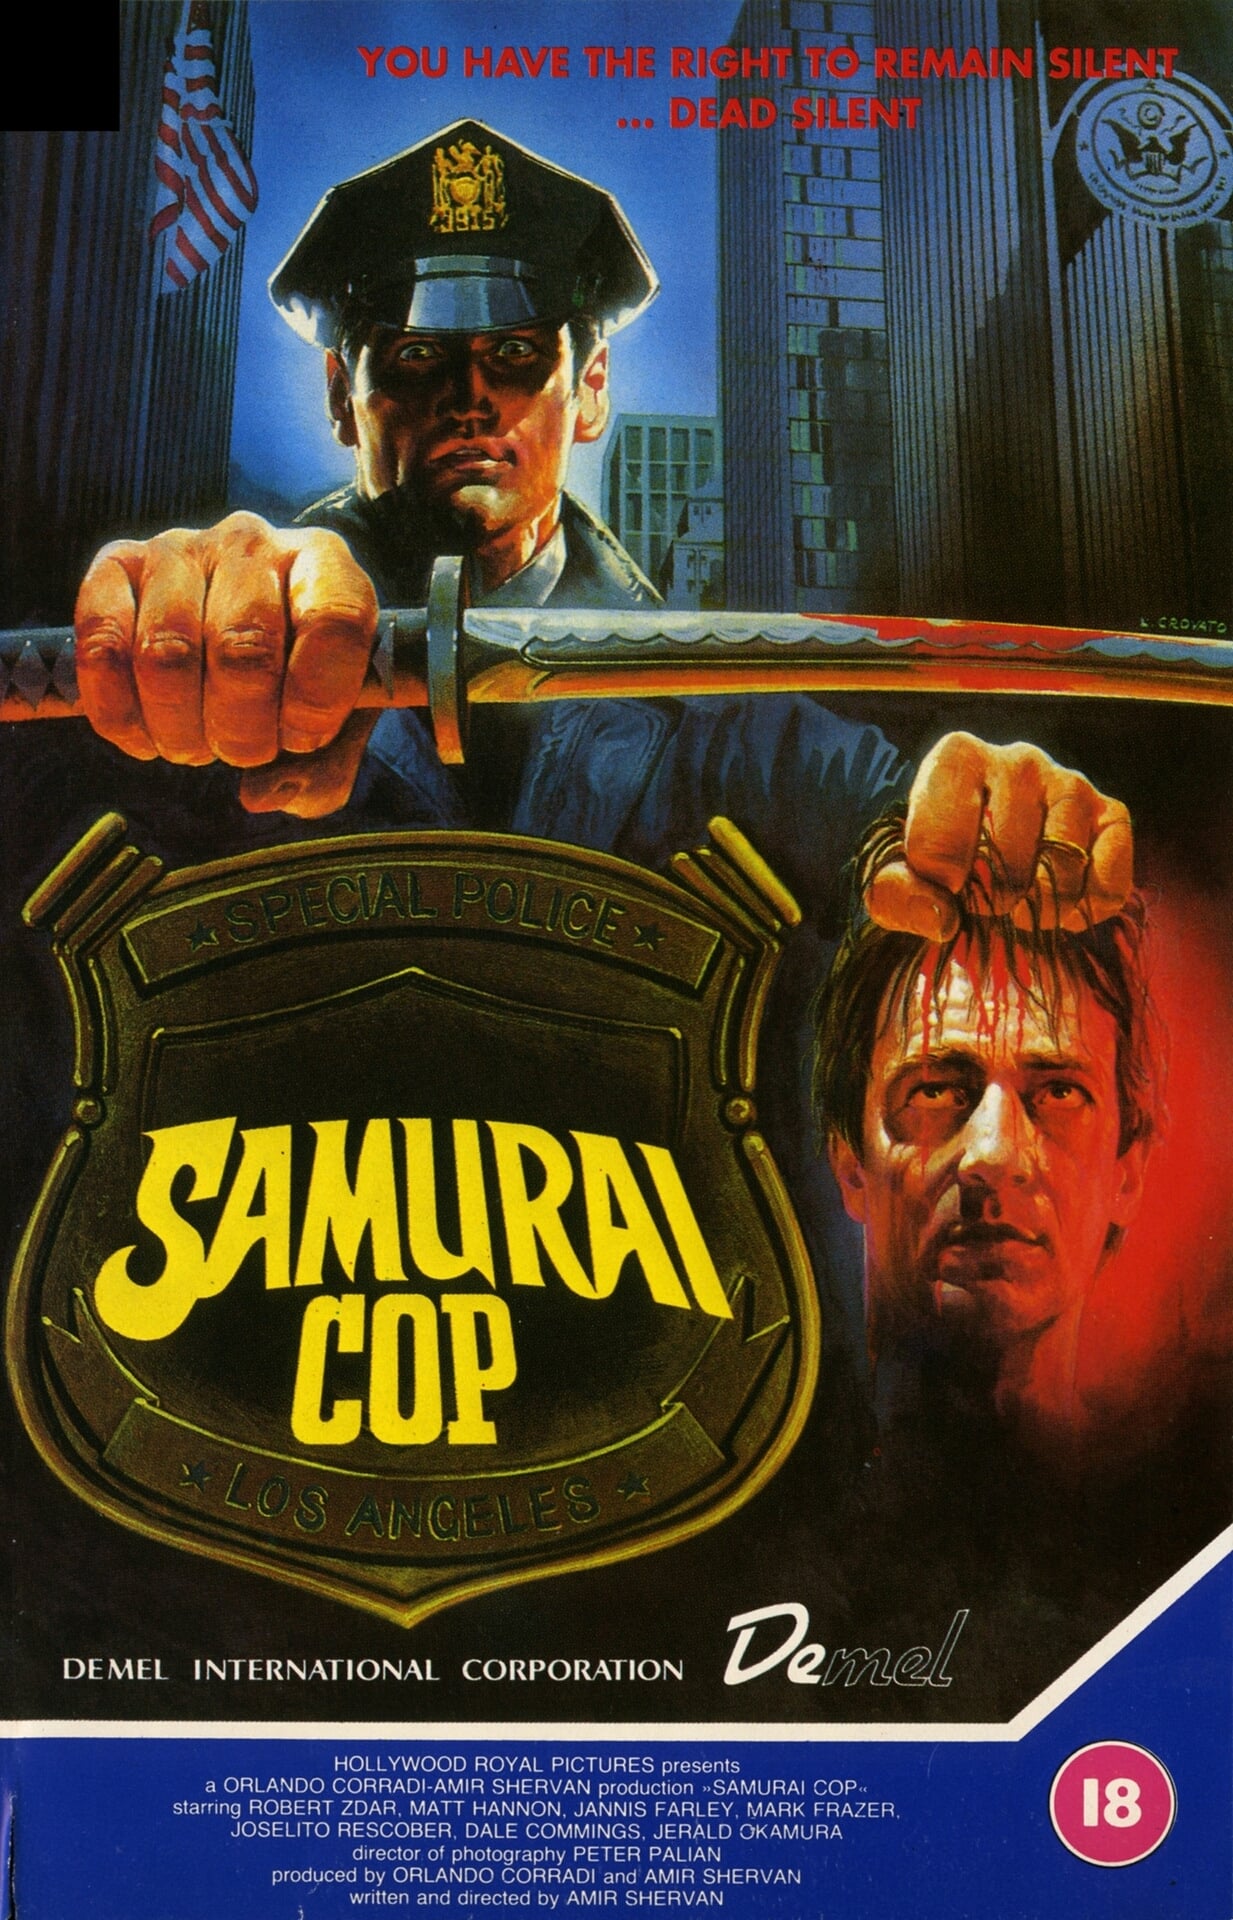 Samurai Cop poster